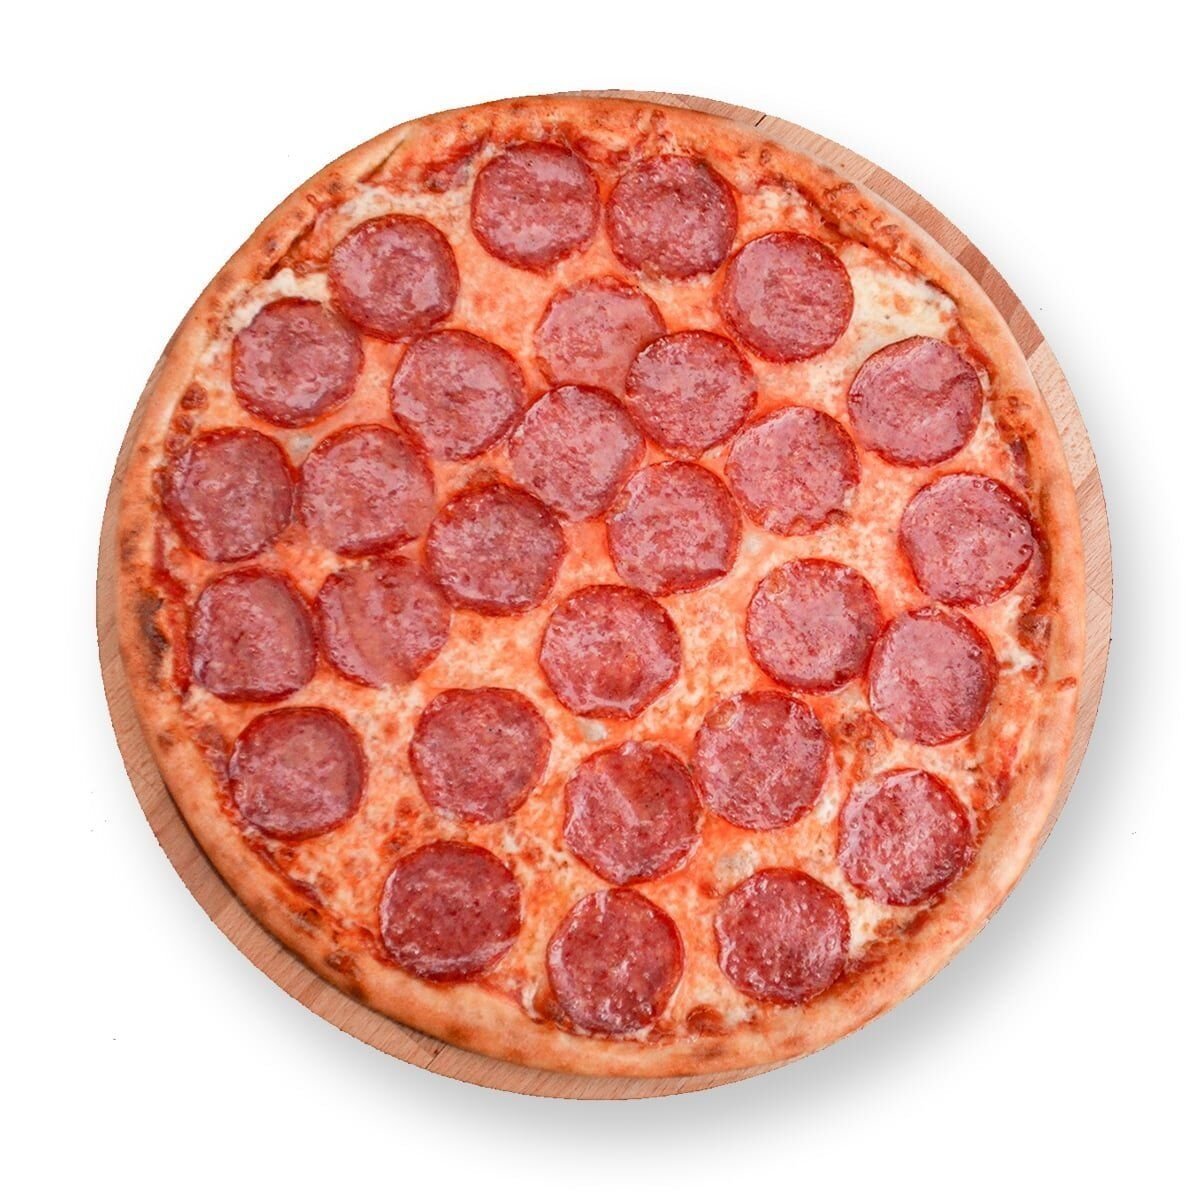 какую колбасу положить в пиццу пепперони фото 58